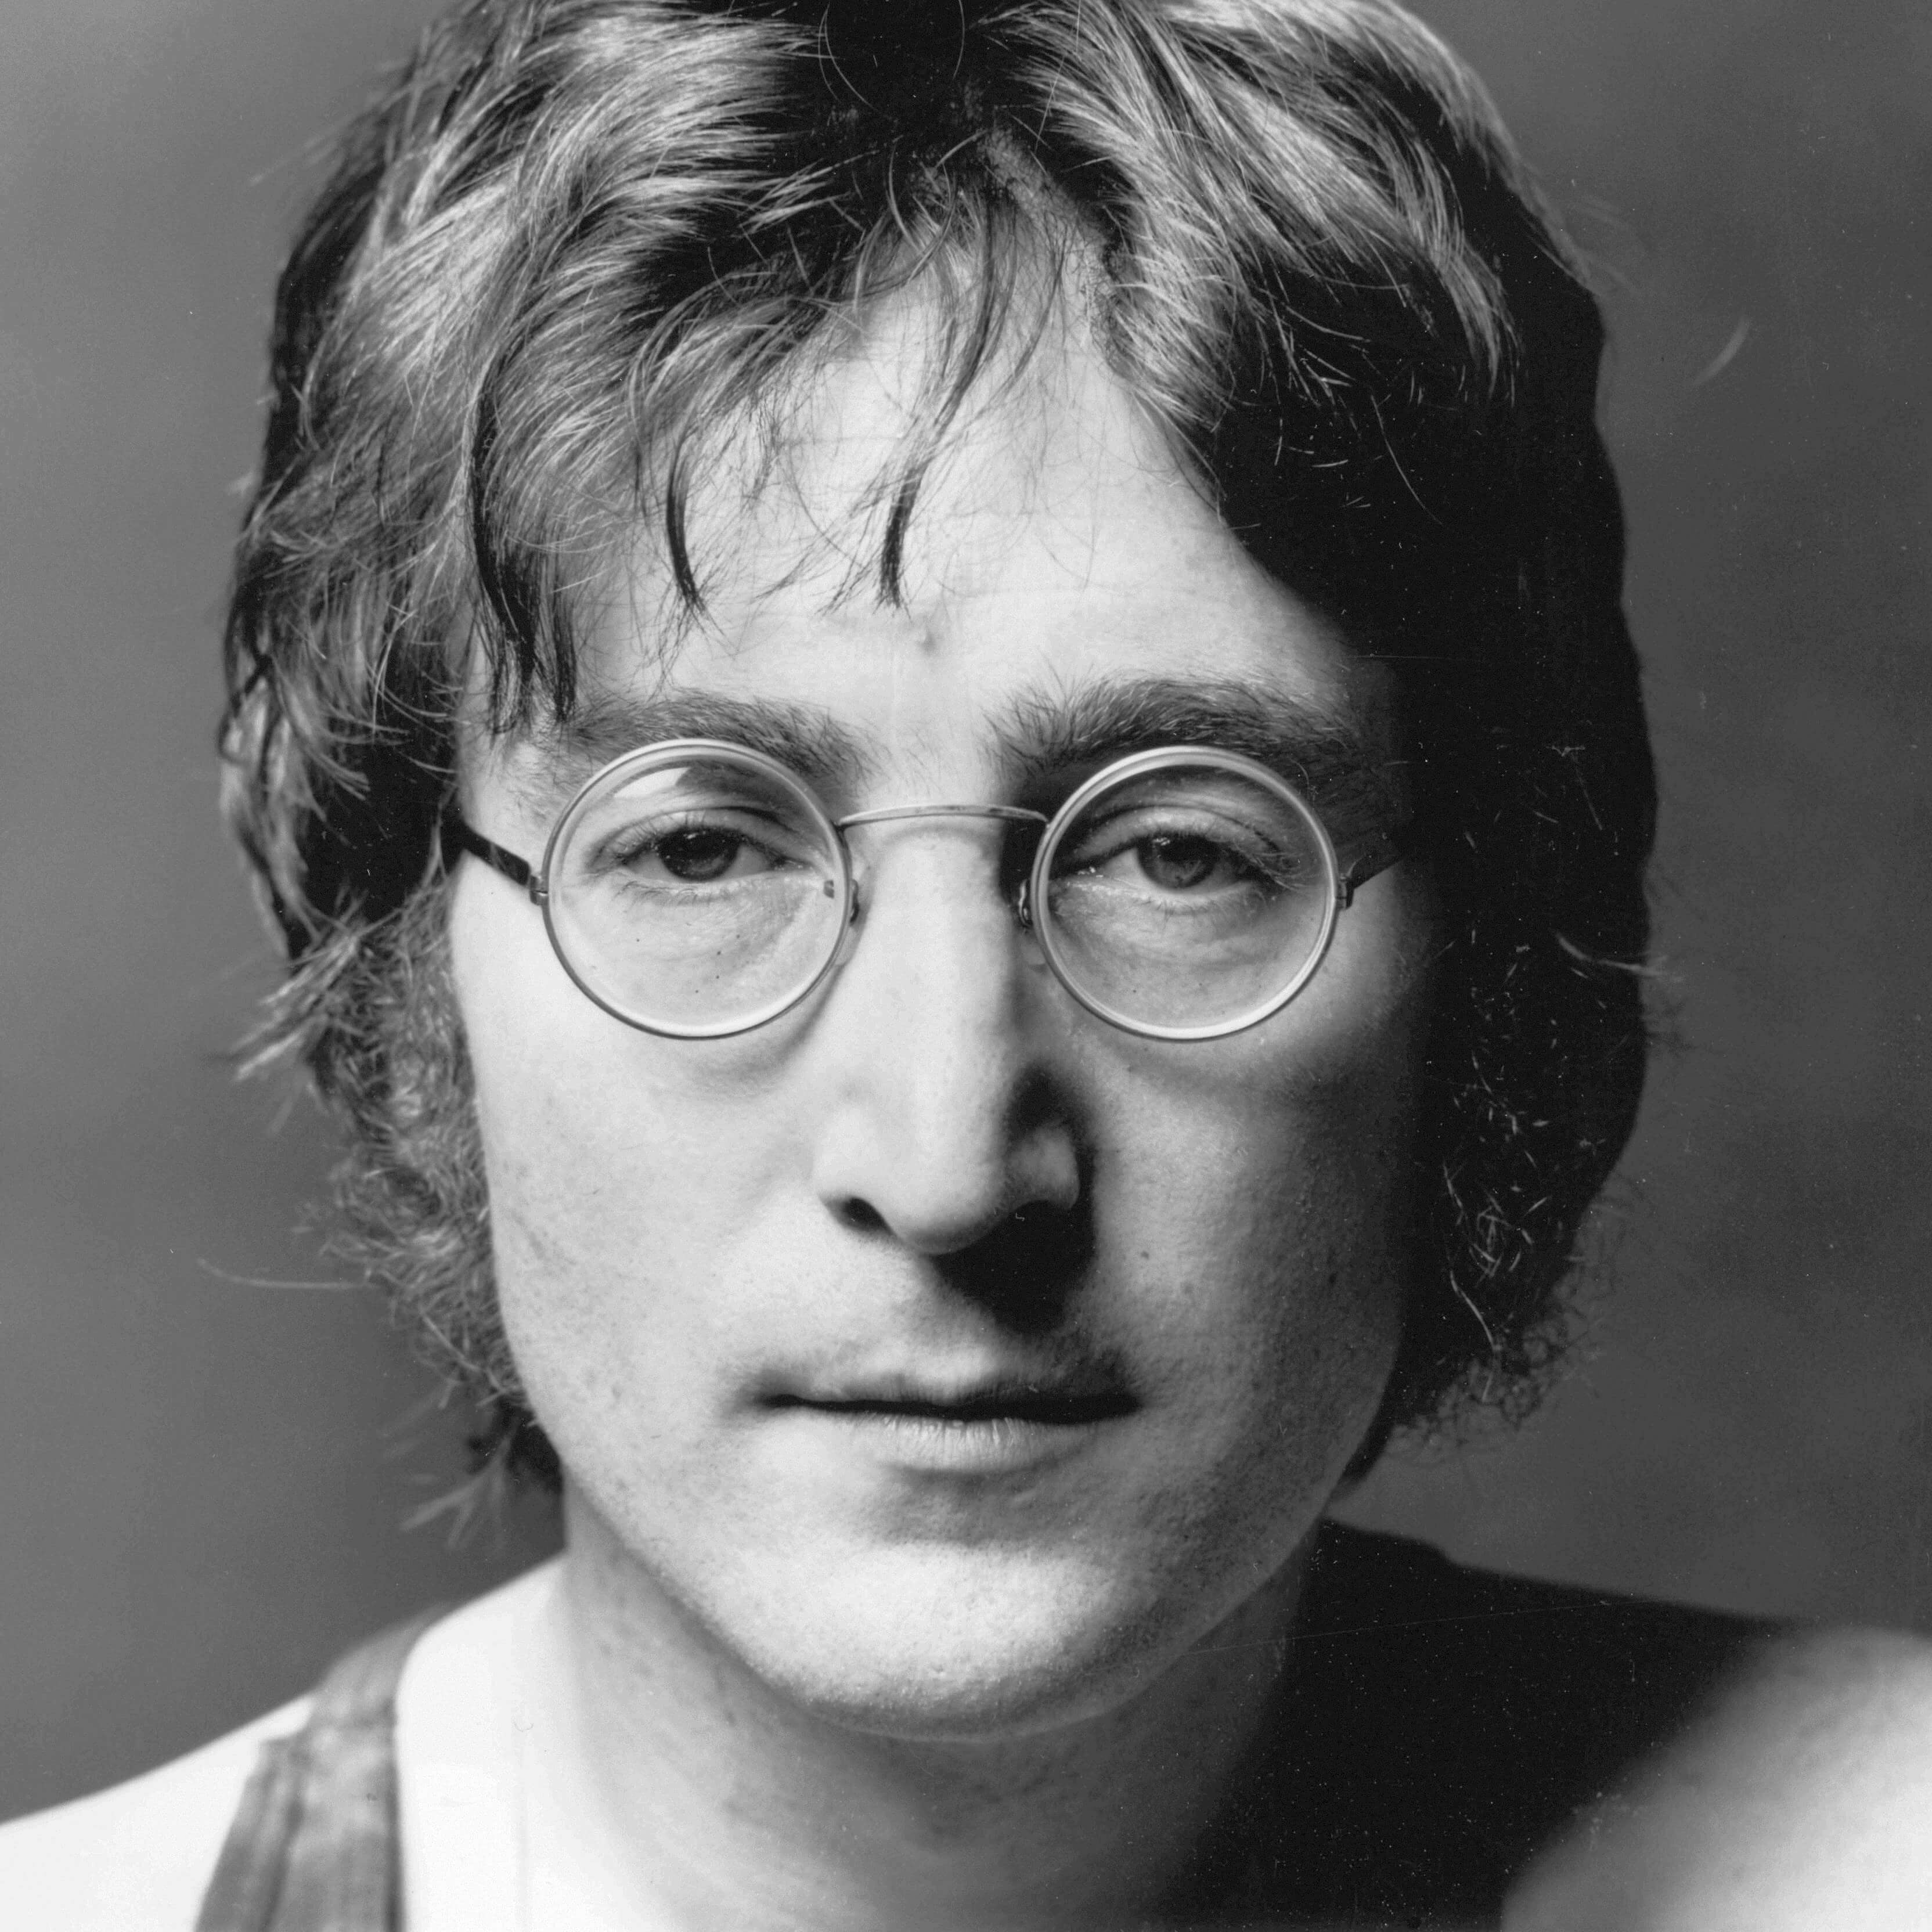 John Lennon Biography Singer Profile